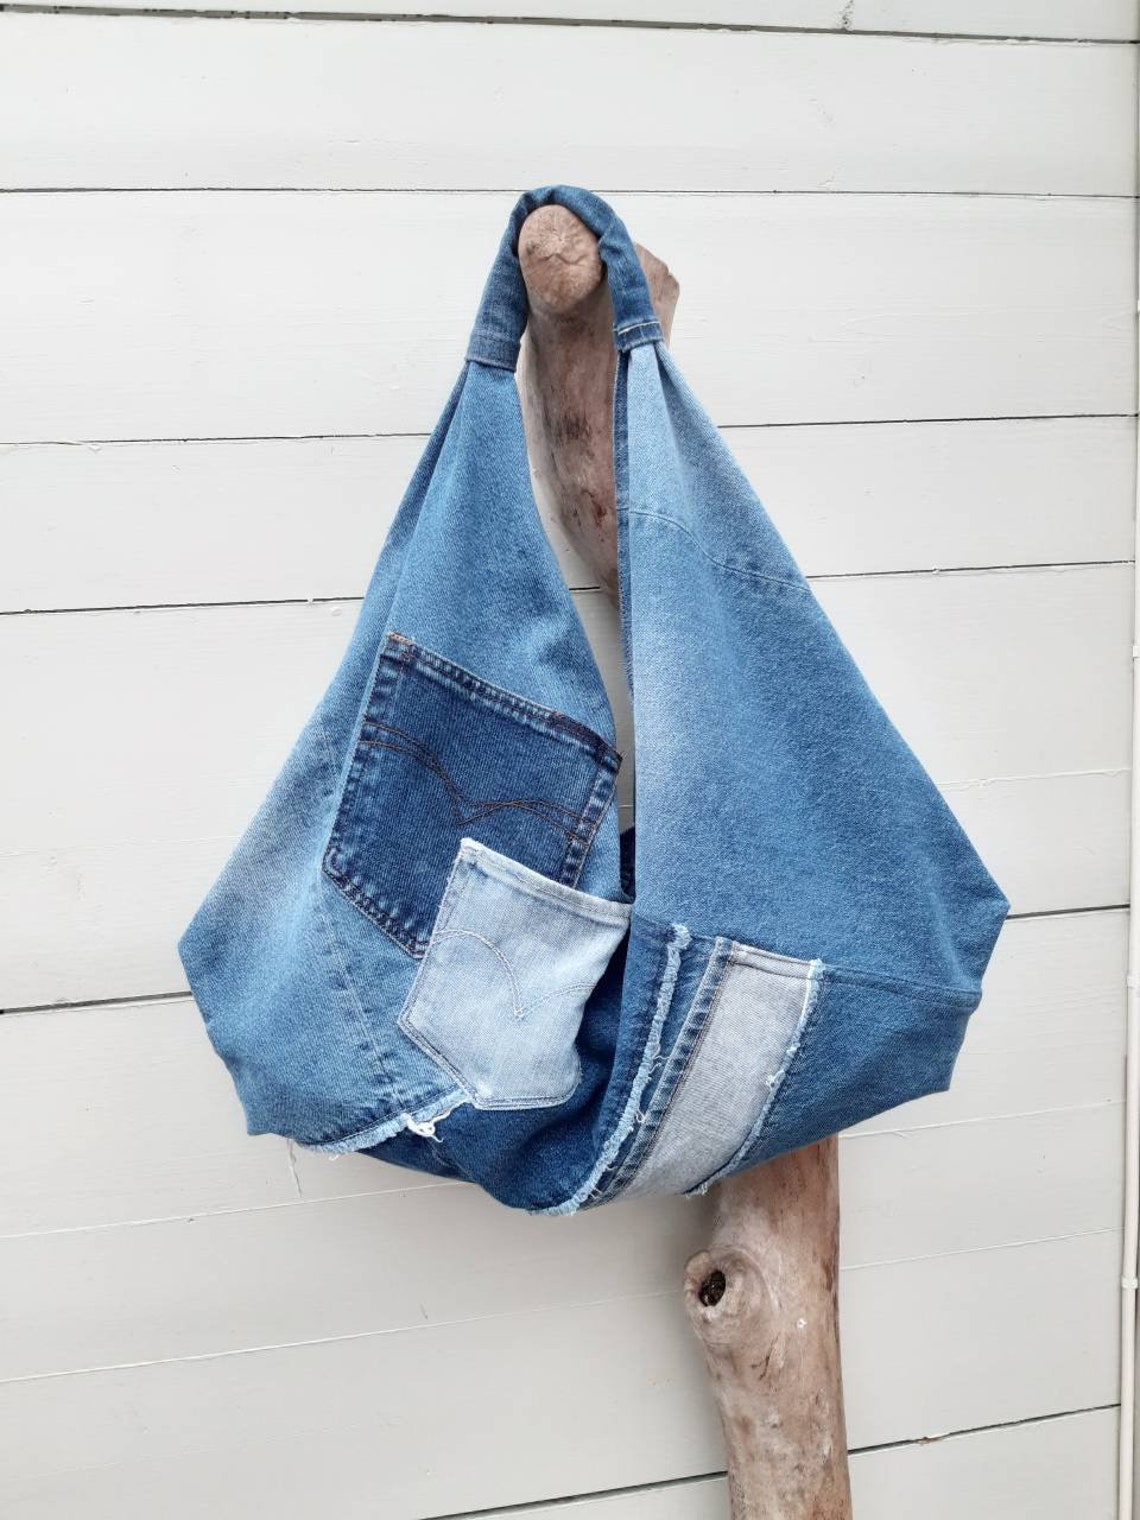 Jeans origami bag patchwork bag denim bag jeans hobo bag | Etsy